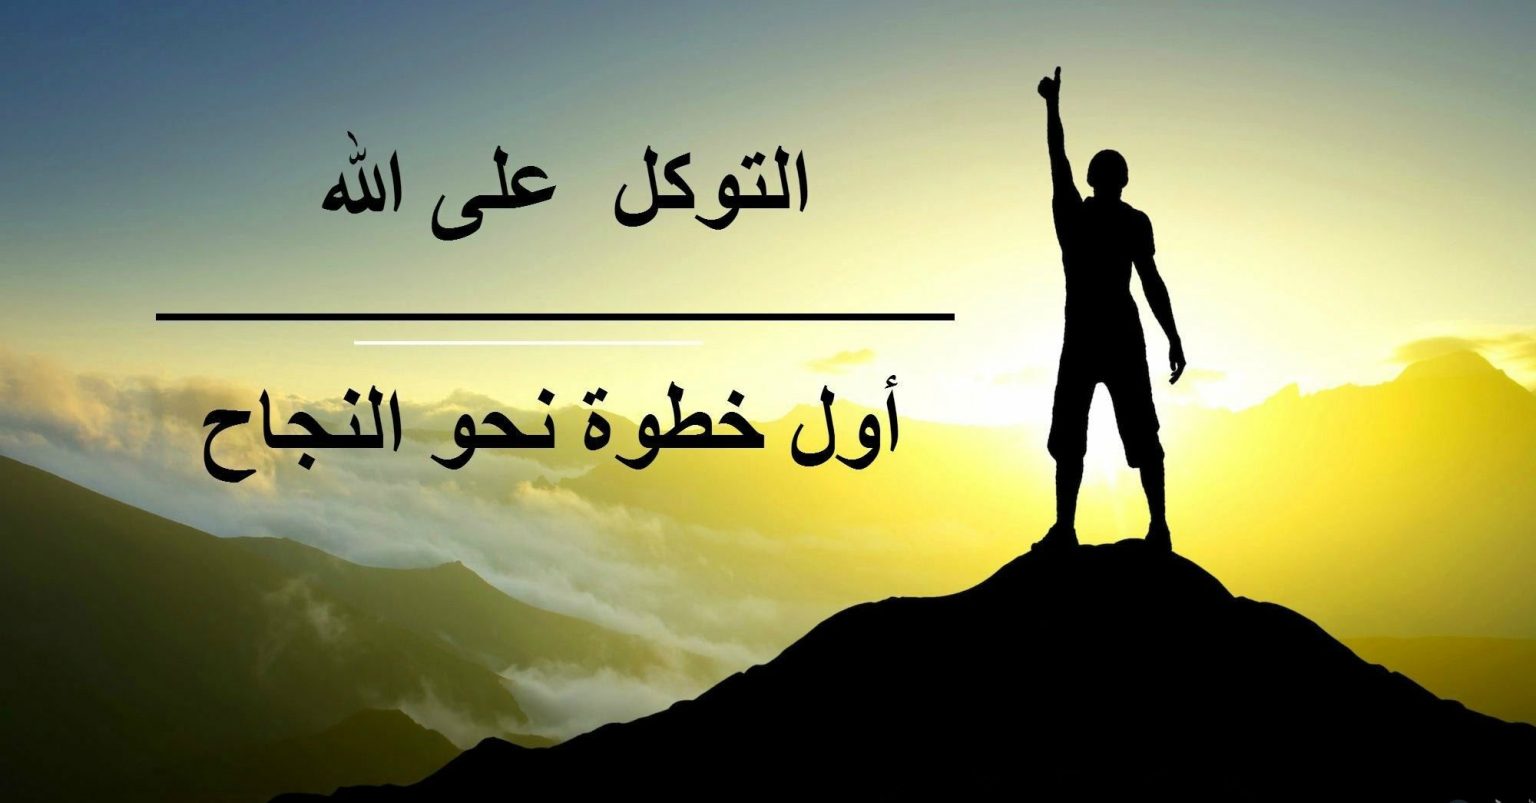 عبارات تشجيعية عن النجاح ملهمة وتحفيزية • موقع مصري